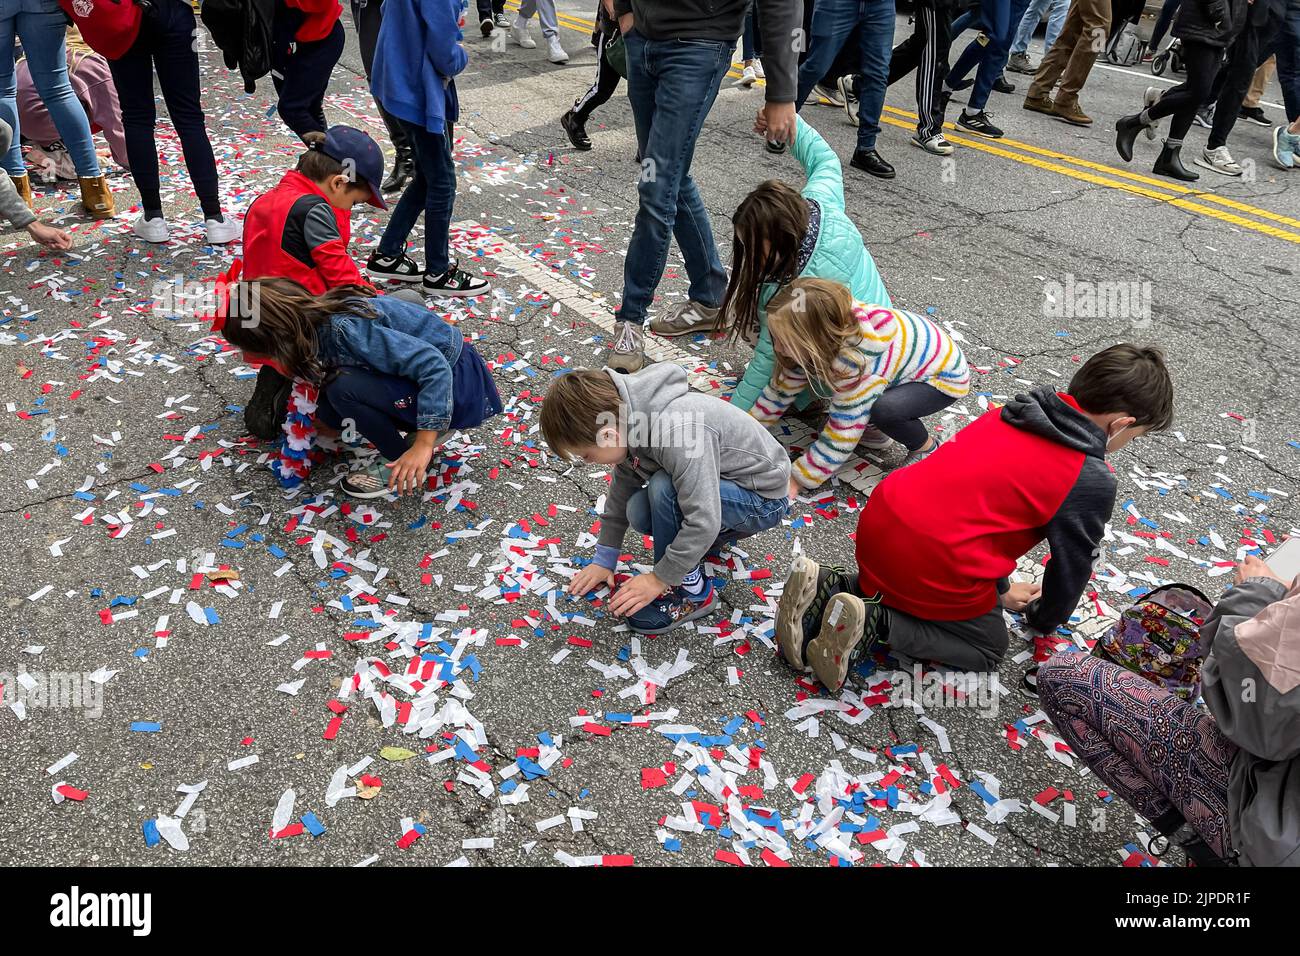 ATLANTA, GA - 5 DE NOVIEMBRE: Los niños sacan confeti de la calle después del desfile del campeonato de la Serie Mundial de los Bravos de Atlanta, el 5 de noviembre de 2021. Foto de stock